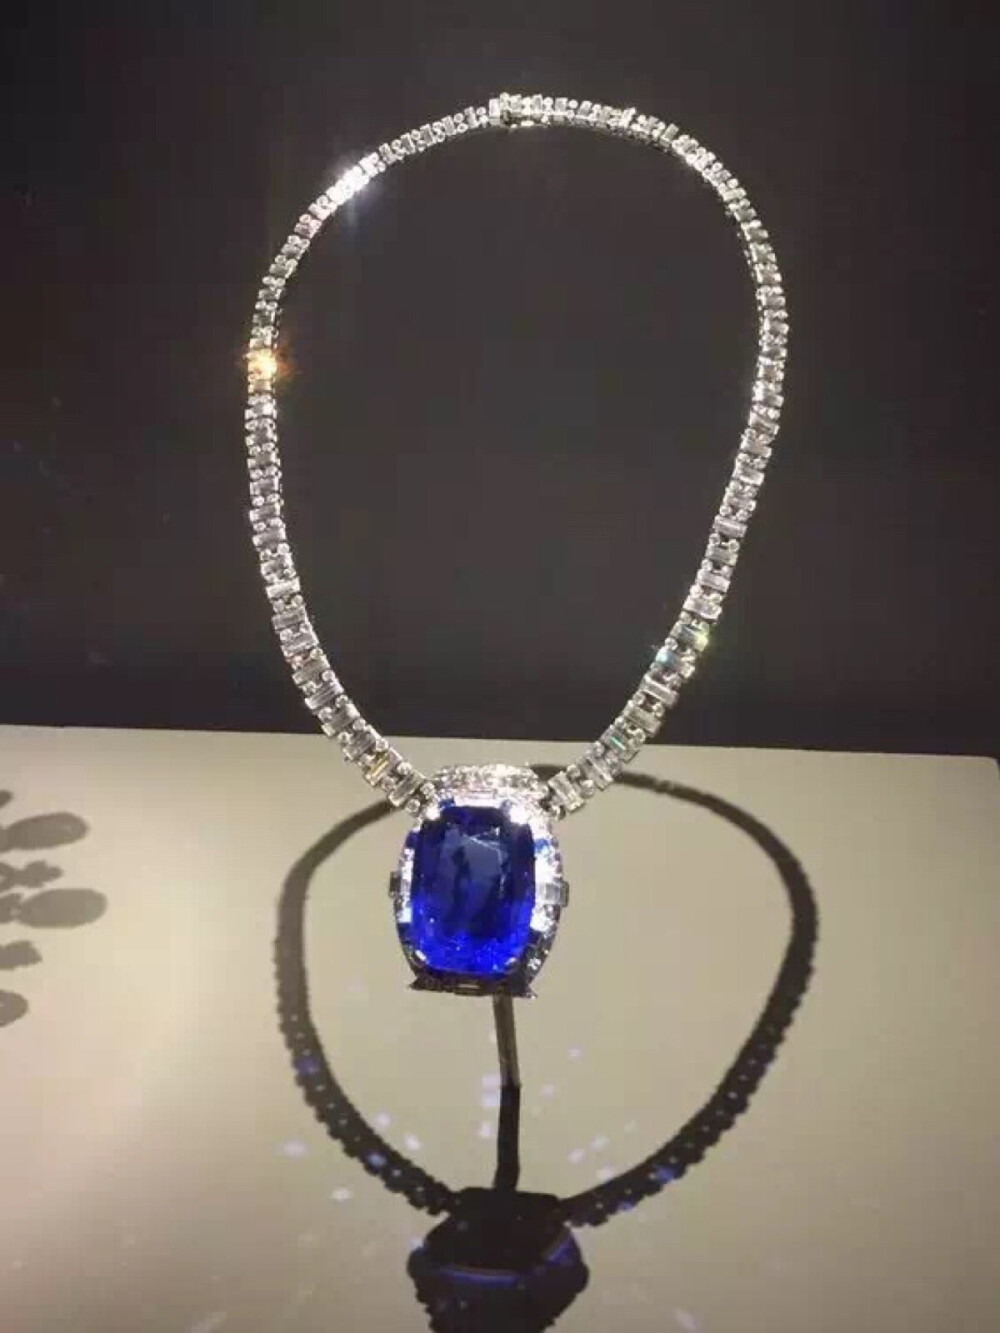 在莫娜的收藏中，颇为著名的当属这颗以莫娜第四任婚姻姓氏命名的俾斯麦蓝宝石，这颗重达98.6克拉有着如同海洋般深邃色彩的宝石是莫娜在1926年的环球旅行中途径蓝宝石圣地斯里兰卡时买下的。后莫娜委托卡地亚把蓝宝石加以镶嵌，成了这条包含了300余颗钻石的蓝宝石钻石铂金项链，在1967年，莫娜将这颗绝美的蓝宝石捐赠给美国史密森尼国家自然历史博物馆，时至今日这颗宝石依旧是博物馆中最闻名的宝石之一。